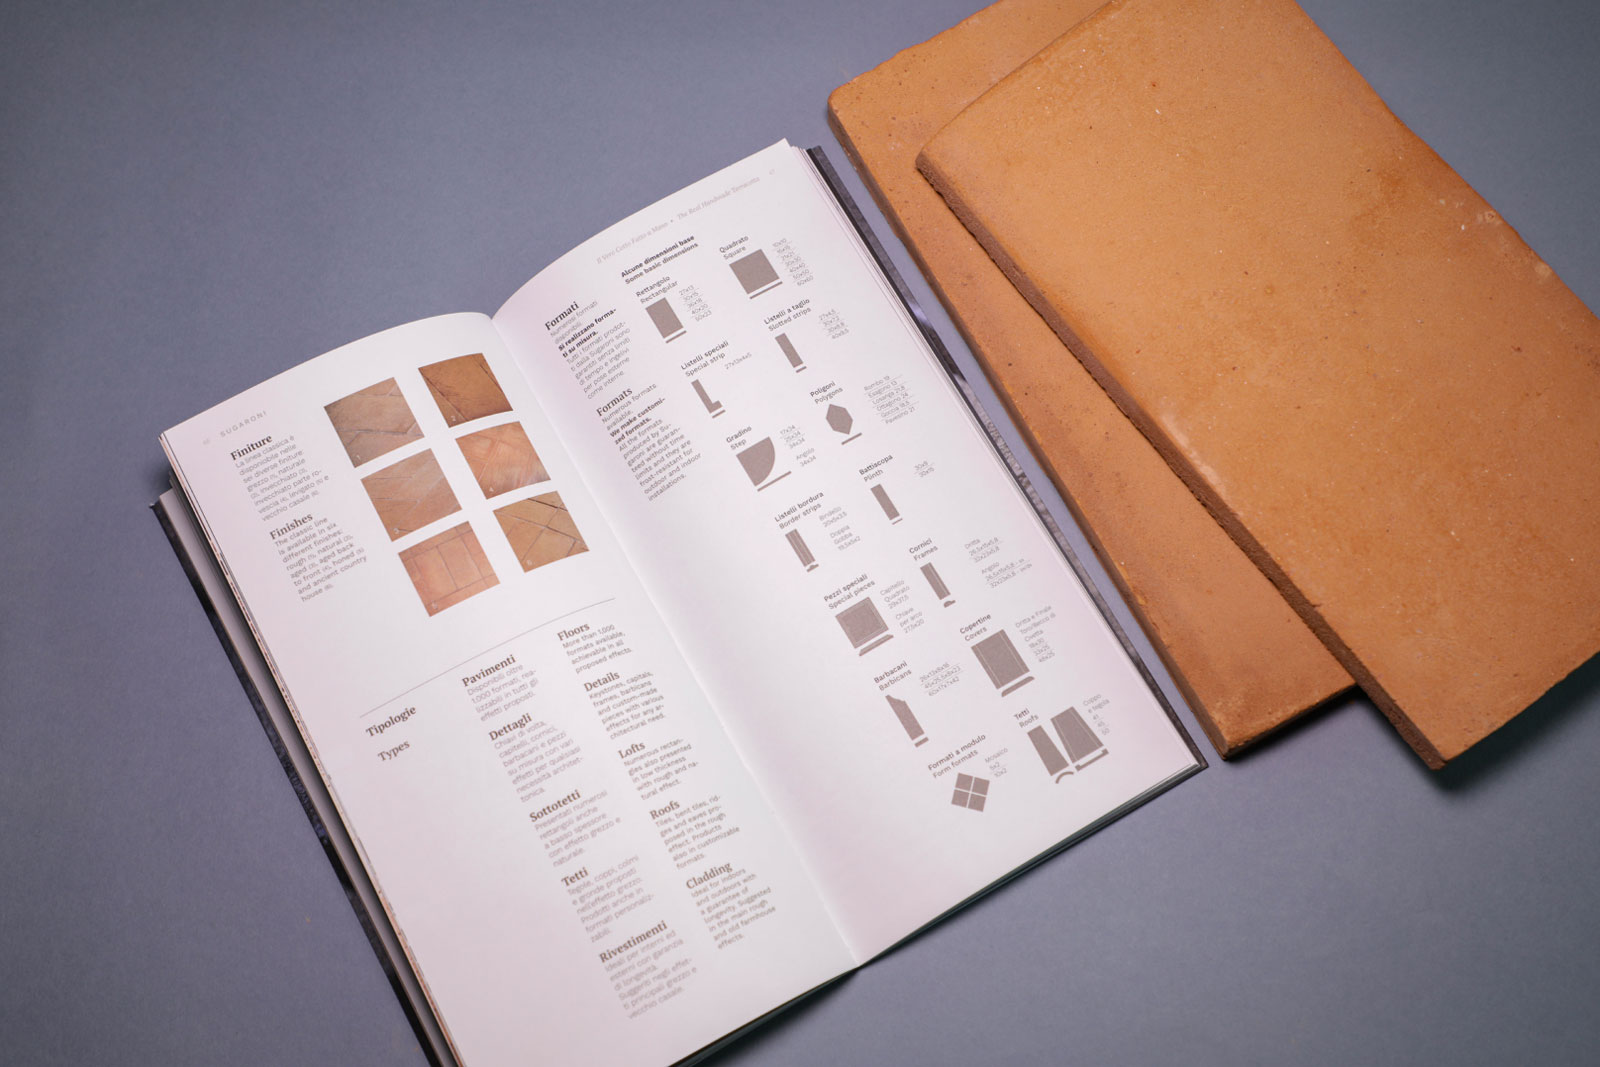 dettaglio di pagina interna del catalogo con mattonelle di cotto fatto a mano accanto al catalogo